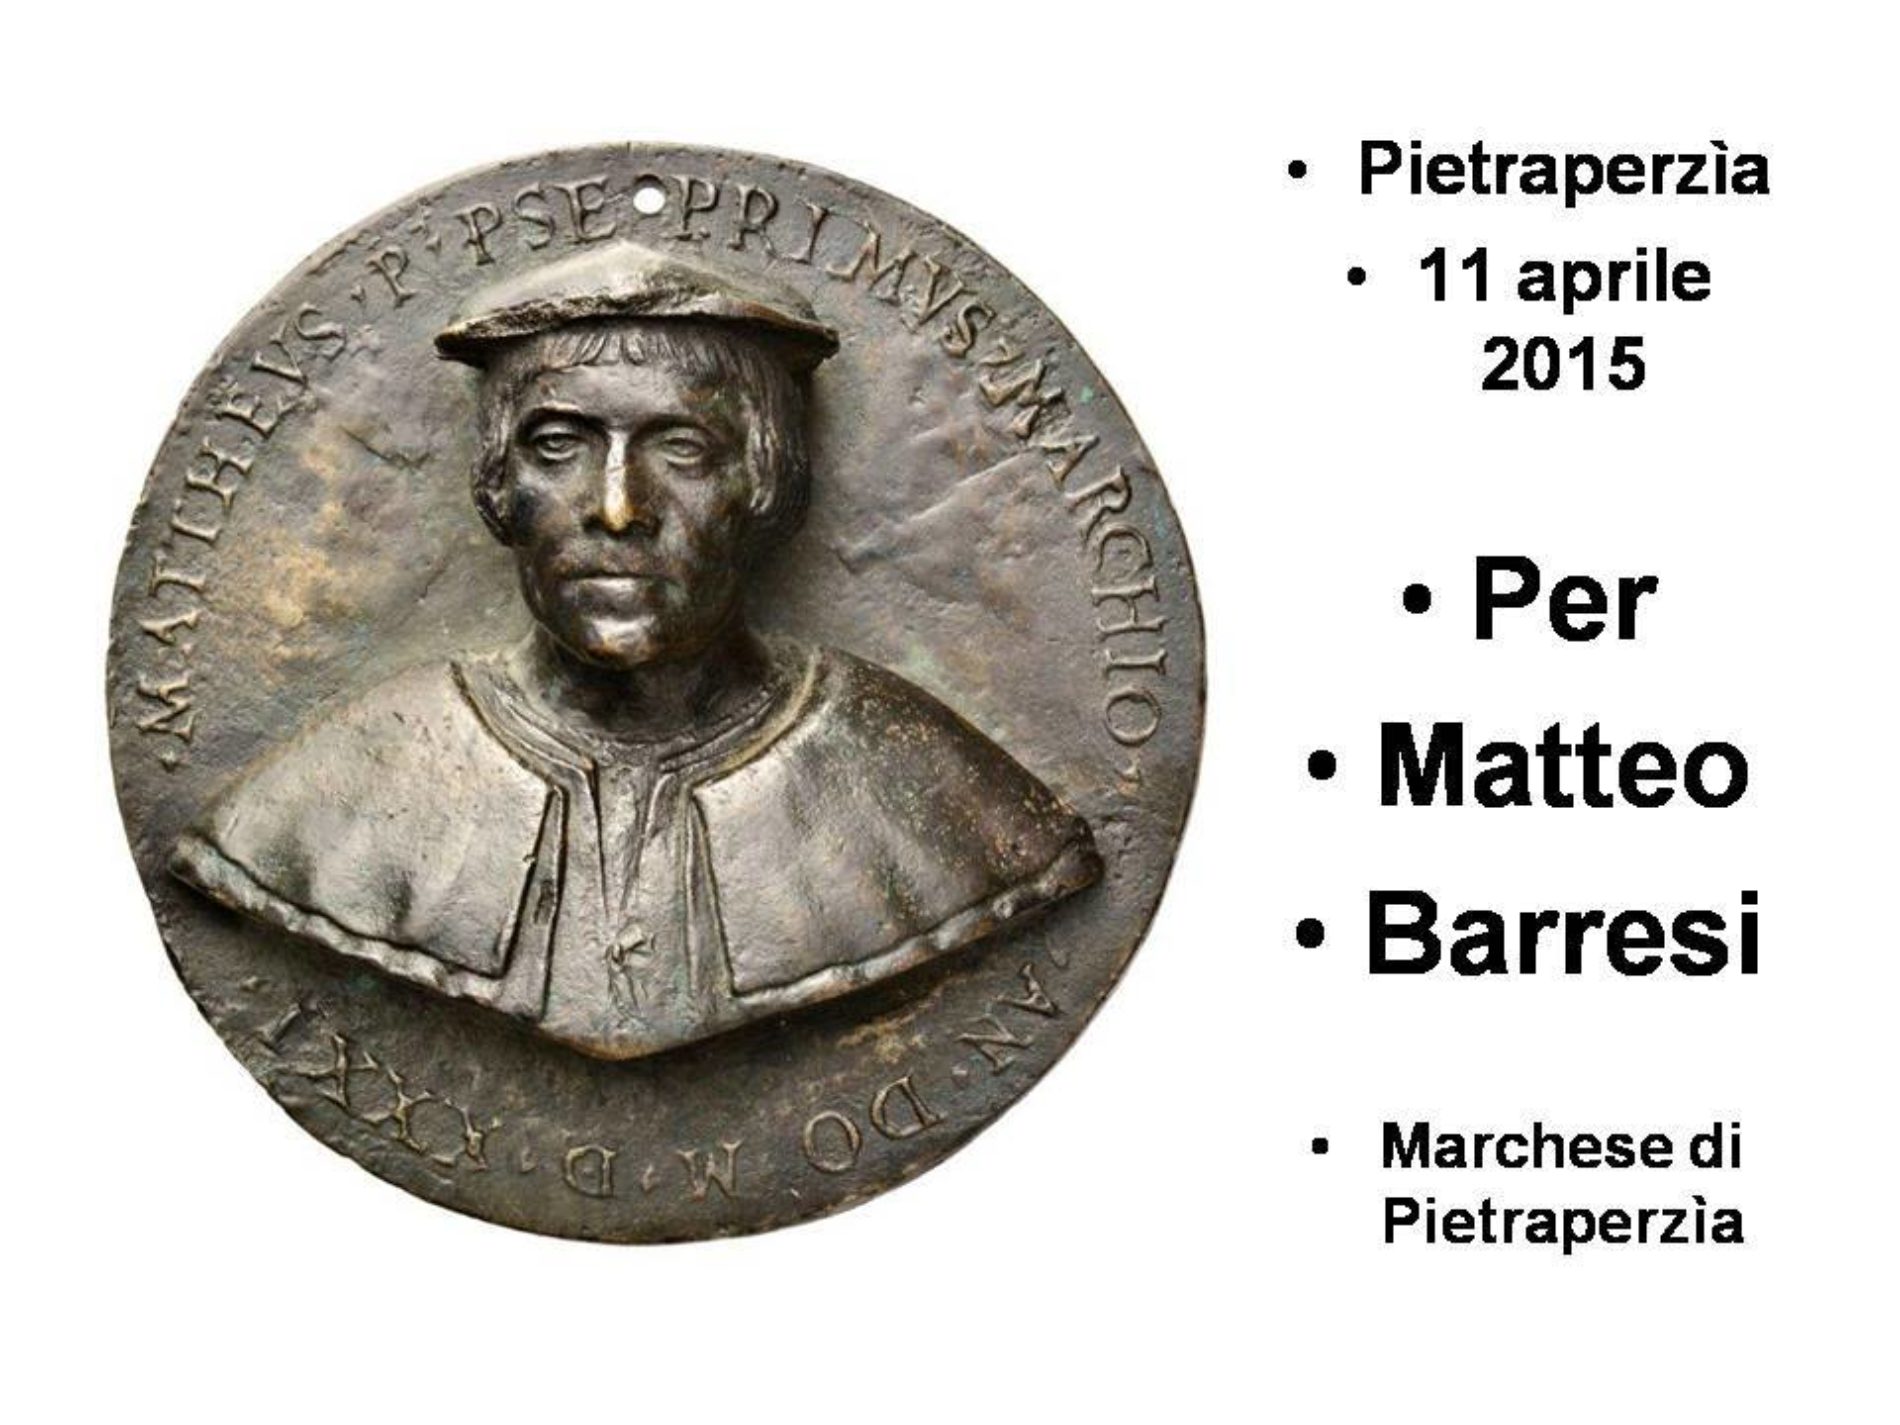 PIETRAPERZIA: Convegno sulla figura di MATTEO BARRESI attraverso la scoperta di un medaglione rinascimentale